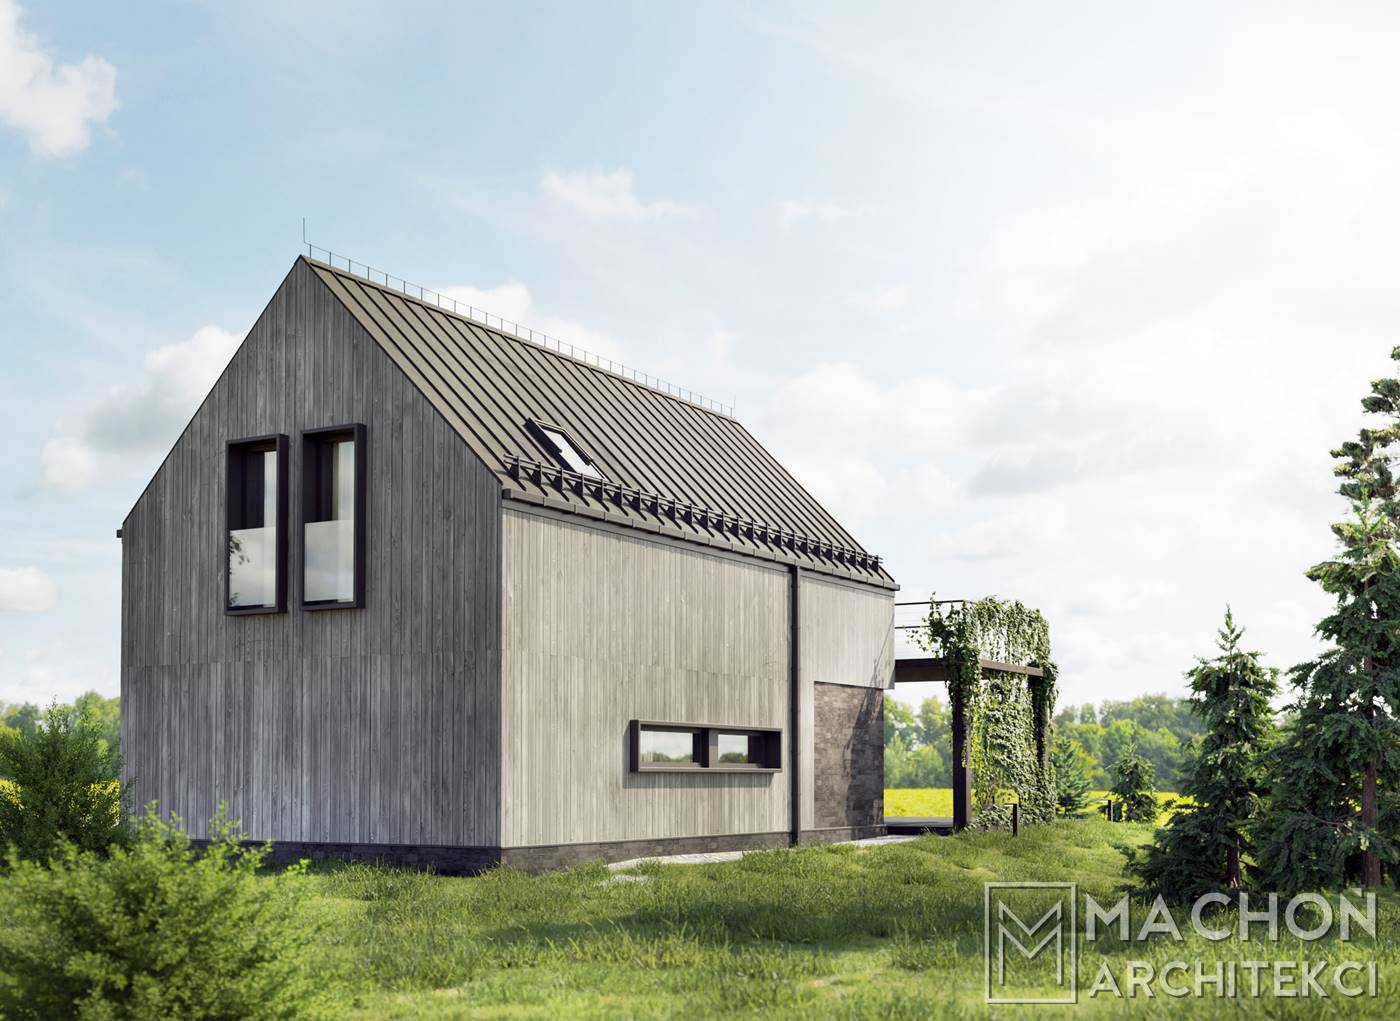 DIABLAK 100 Machoń Architekci szkieletowy stodola mieszkalny projekt z tarasem przeszklony deska elewacyjna